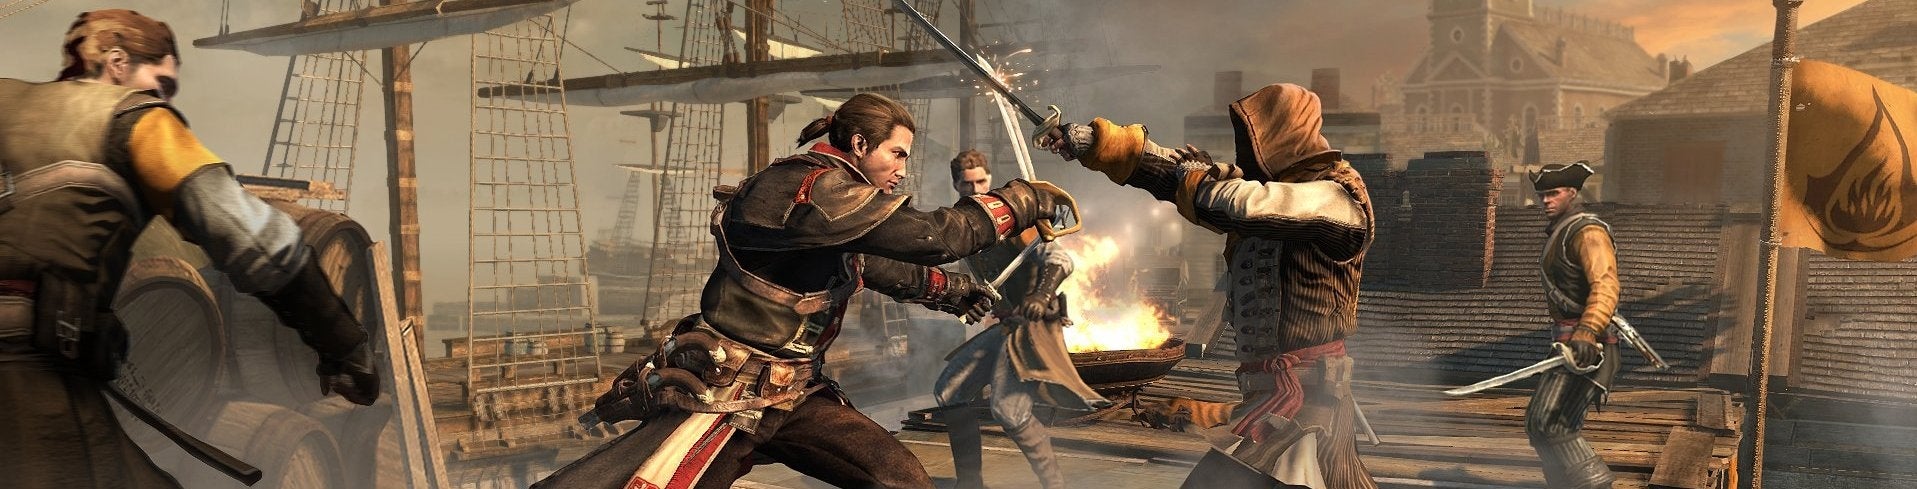 Afbeeldingen van Assassin's Creed: Rogue onthuld, releasedatum op 11 november